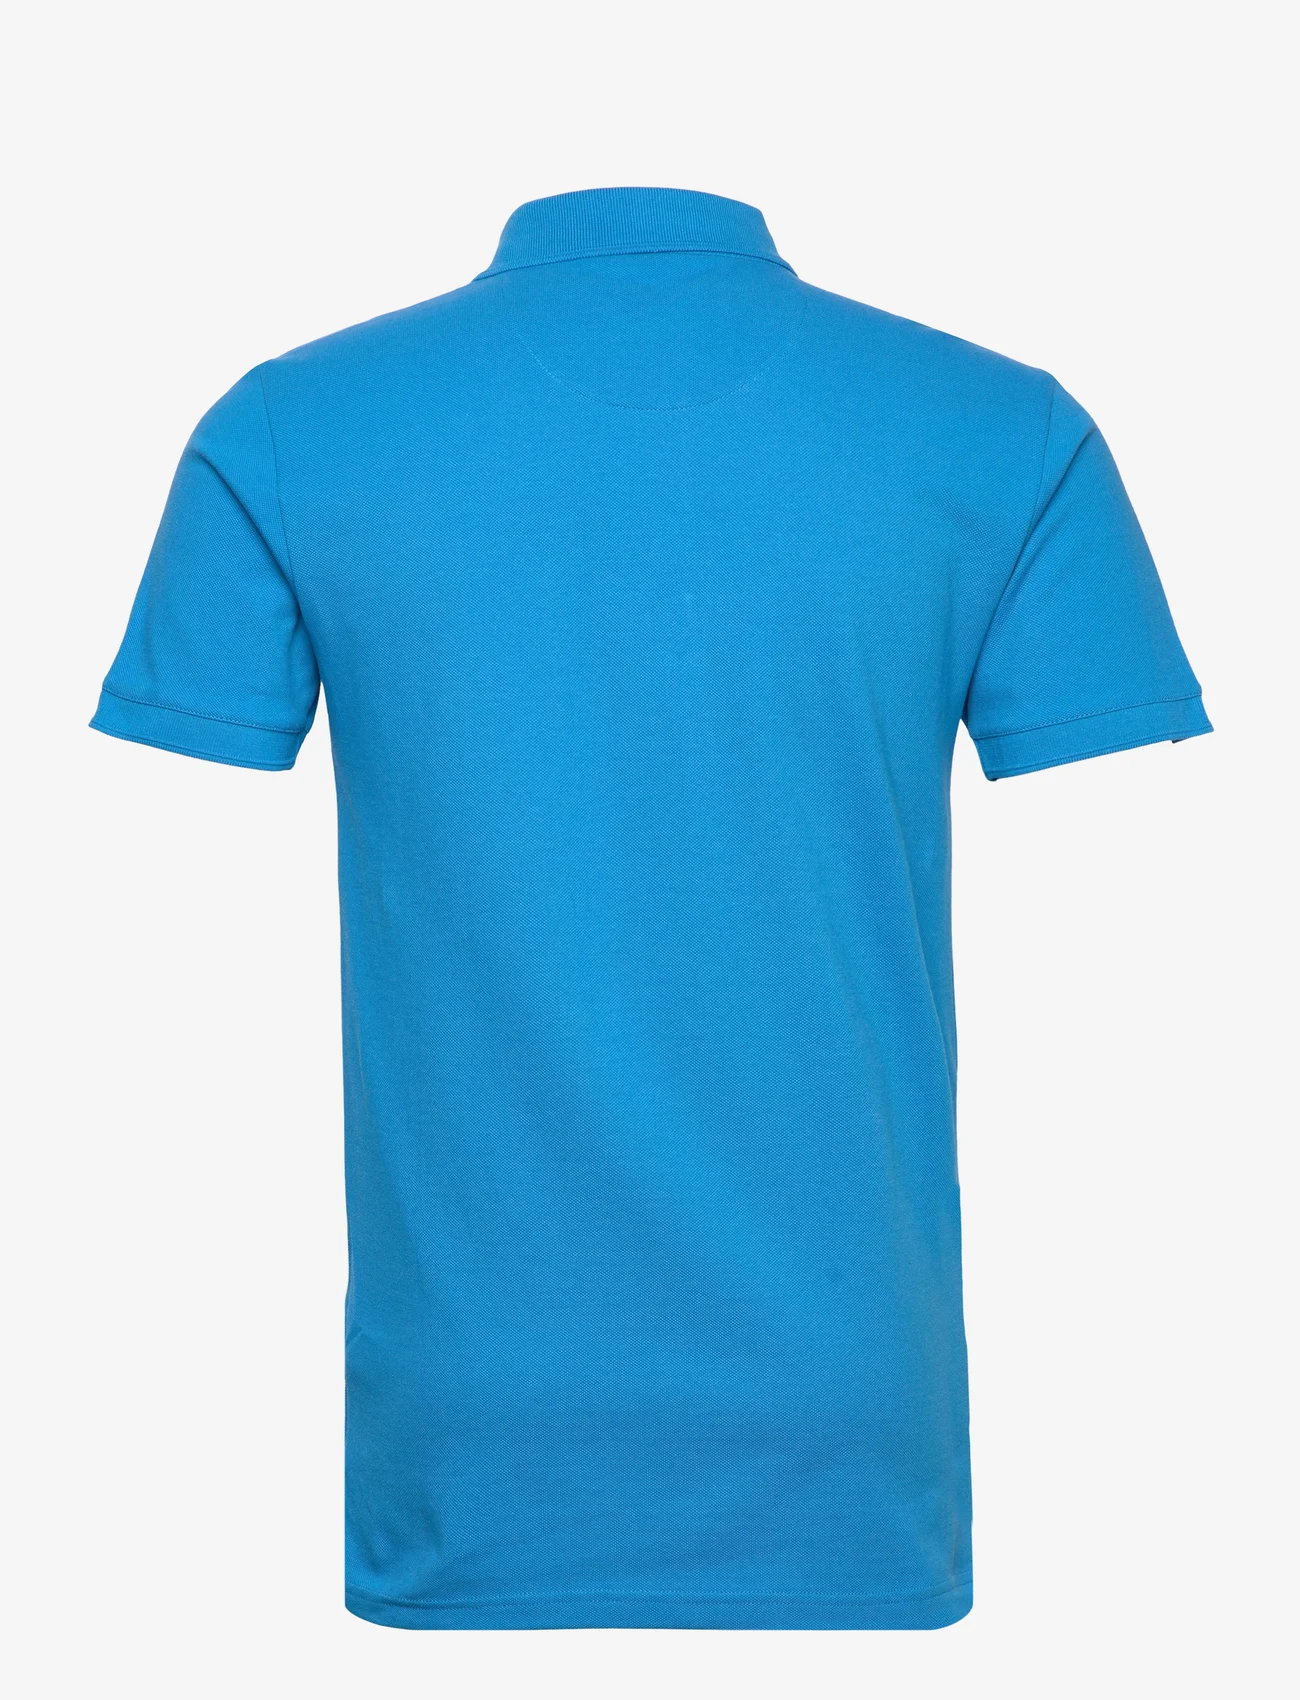 Armor Lux - Polo-Shirt - kurzärmelig - royal blue - 1